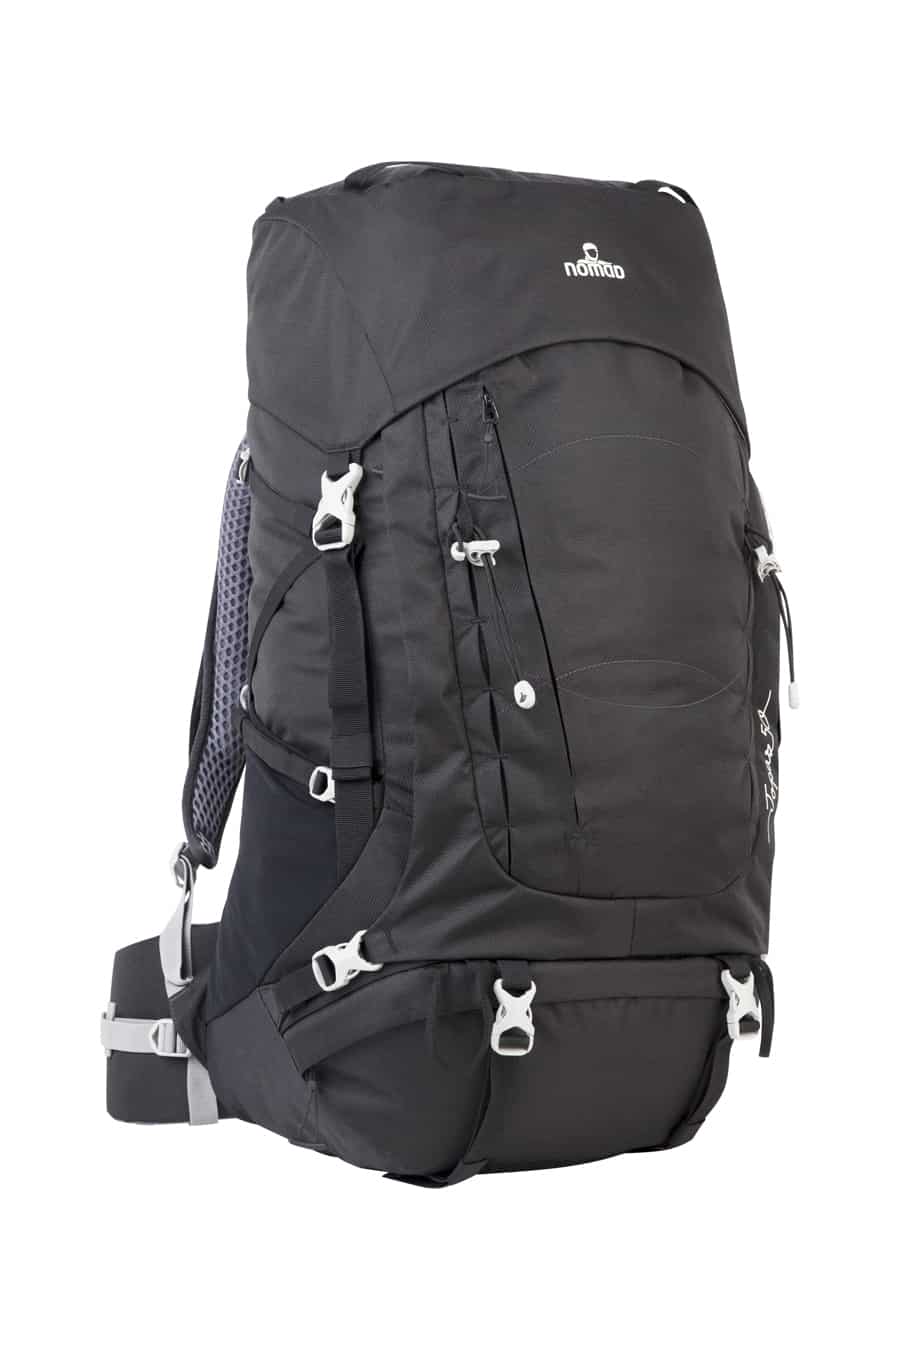 NOMAD® - Topaz SF 50 L Backpack